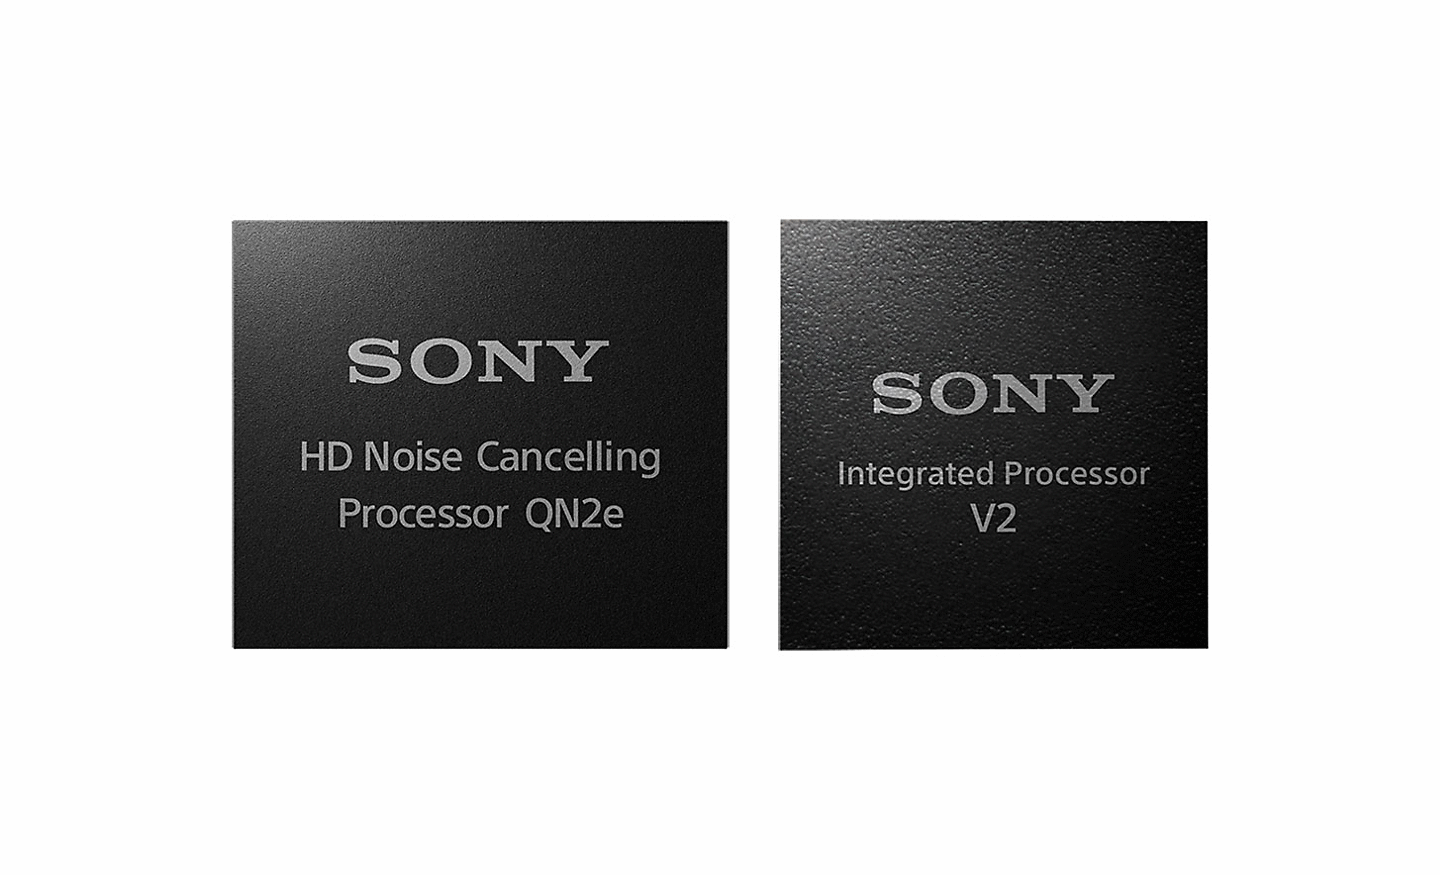 Image de deux processeurs, à gauche un processeur de réduction de bruit HD et à droite le processeur intégré V2